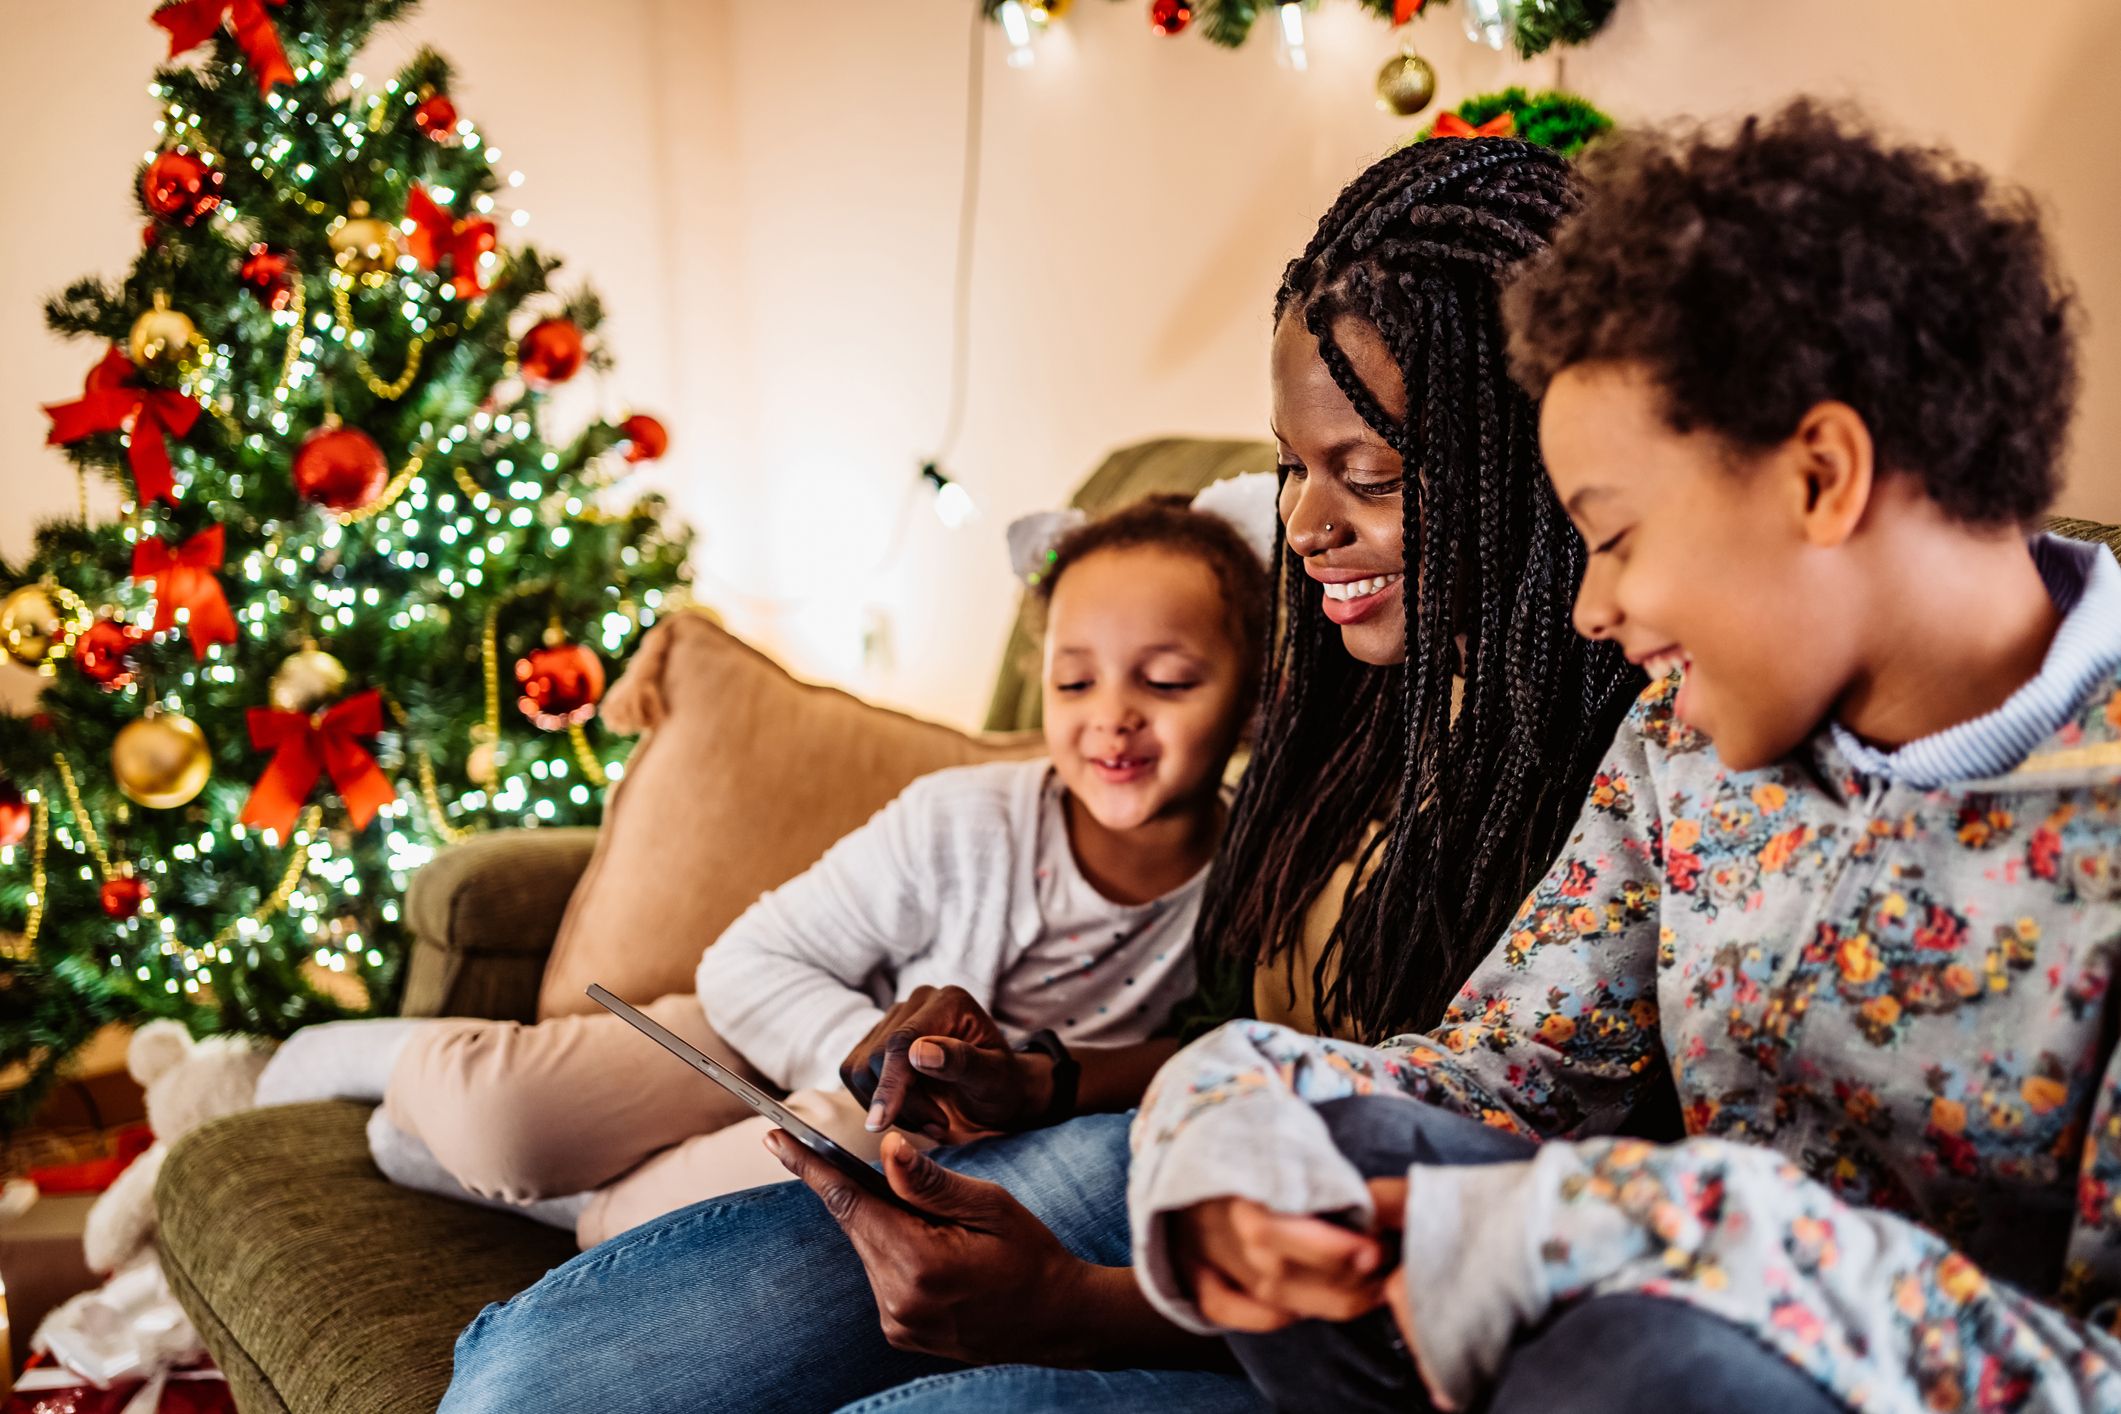 Christmas favours for children - token gift ideas